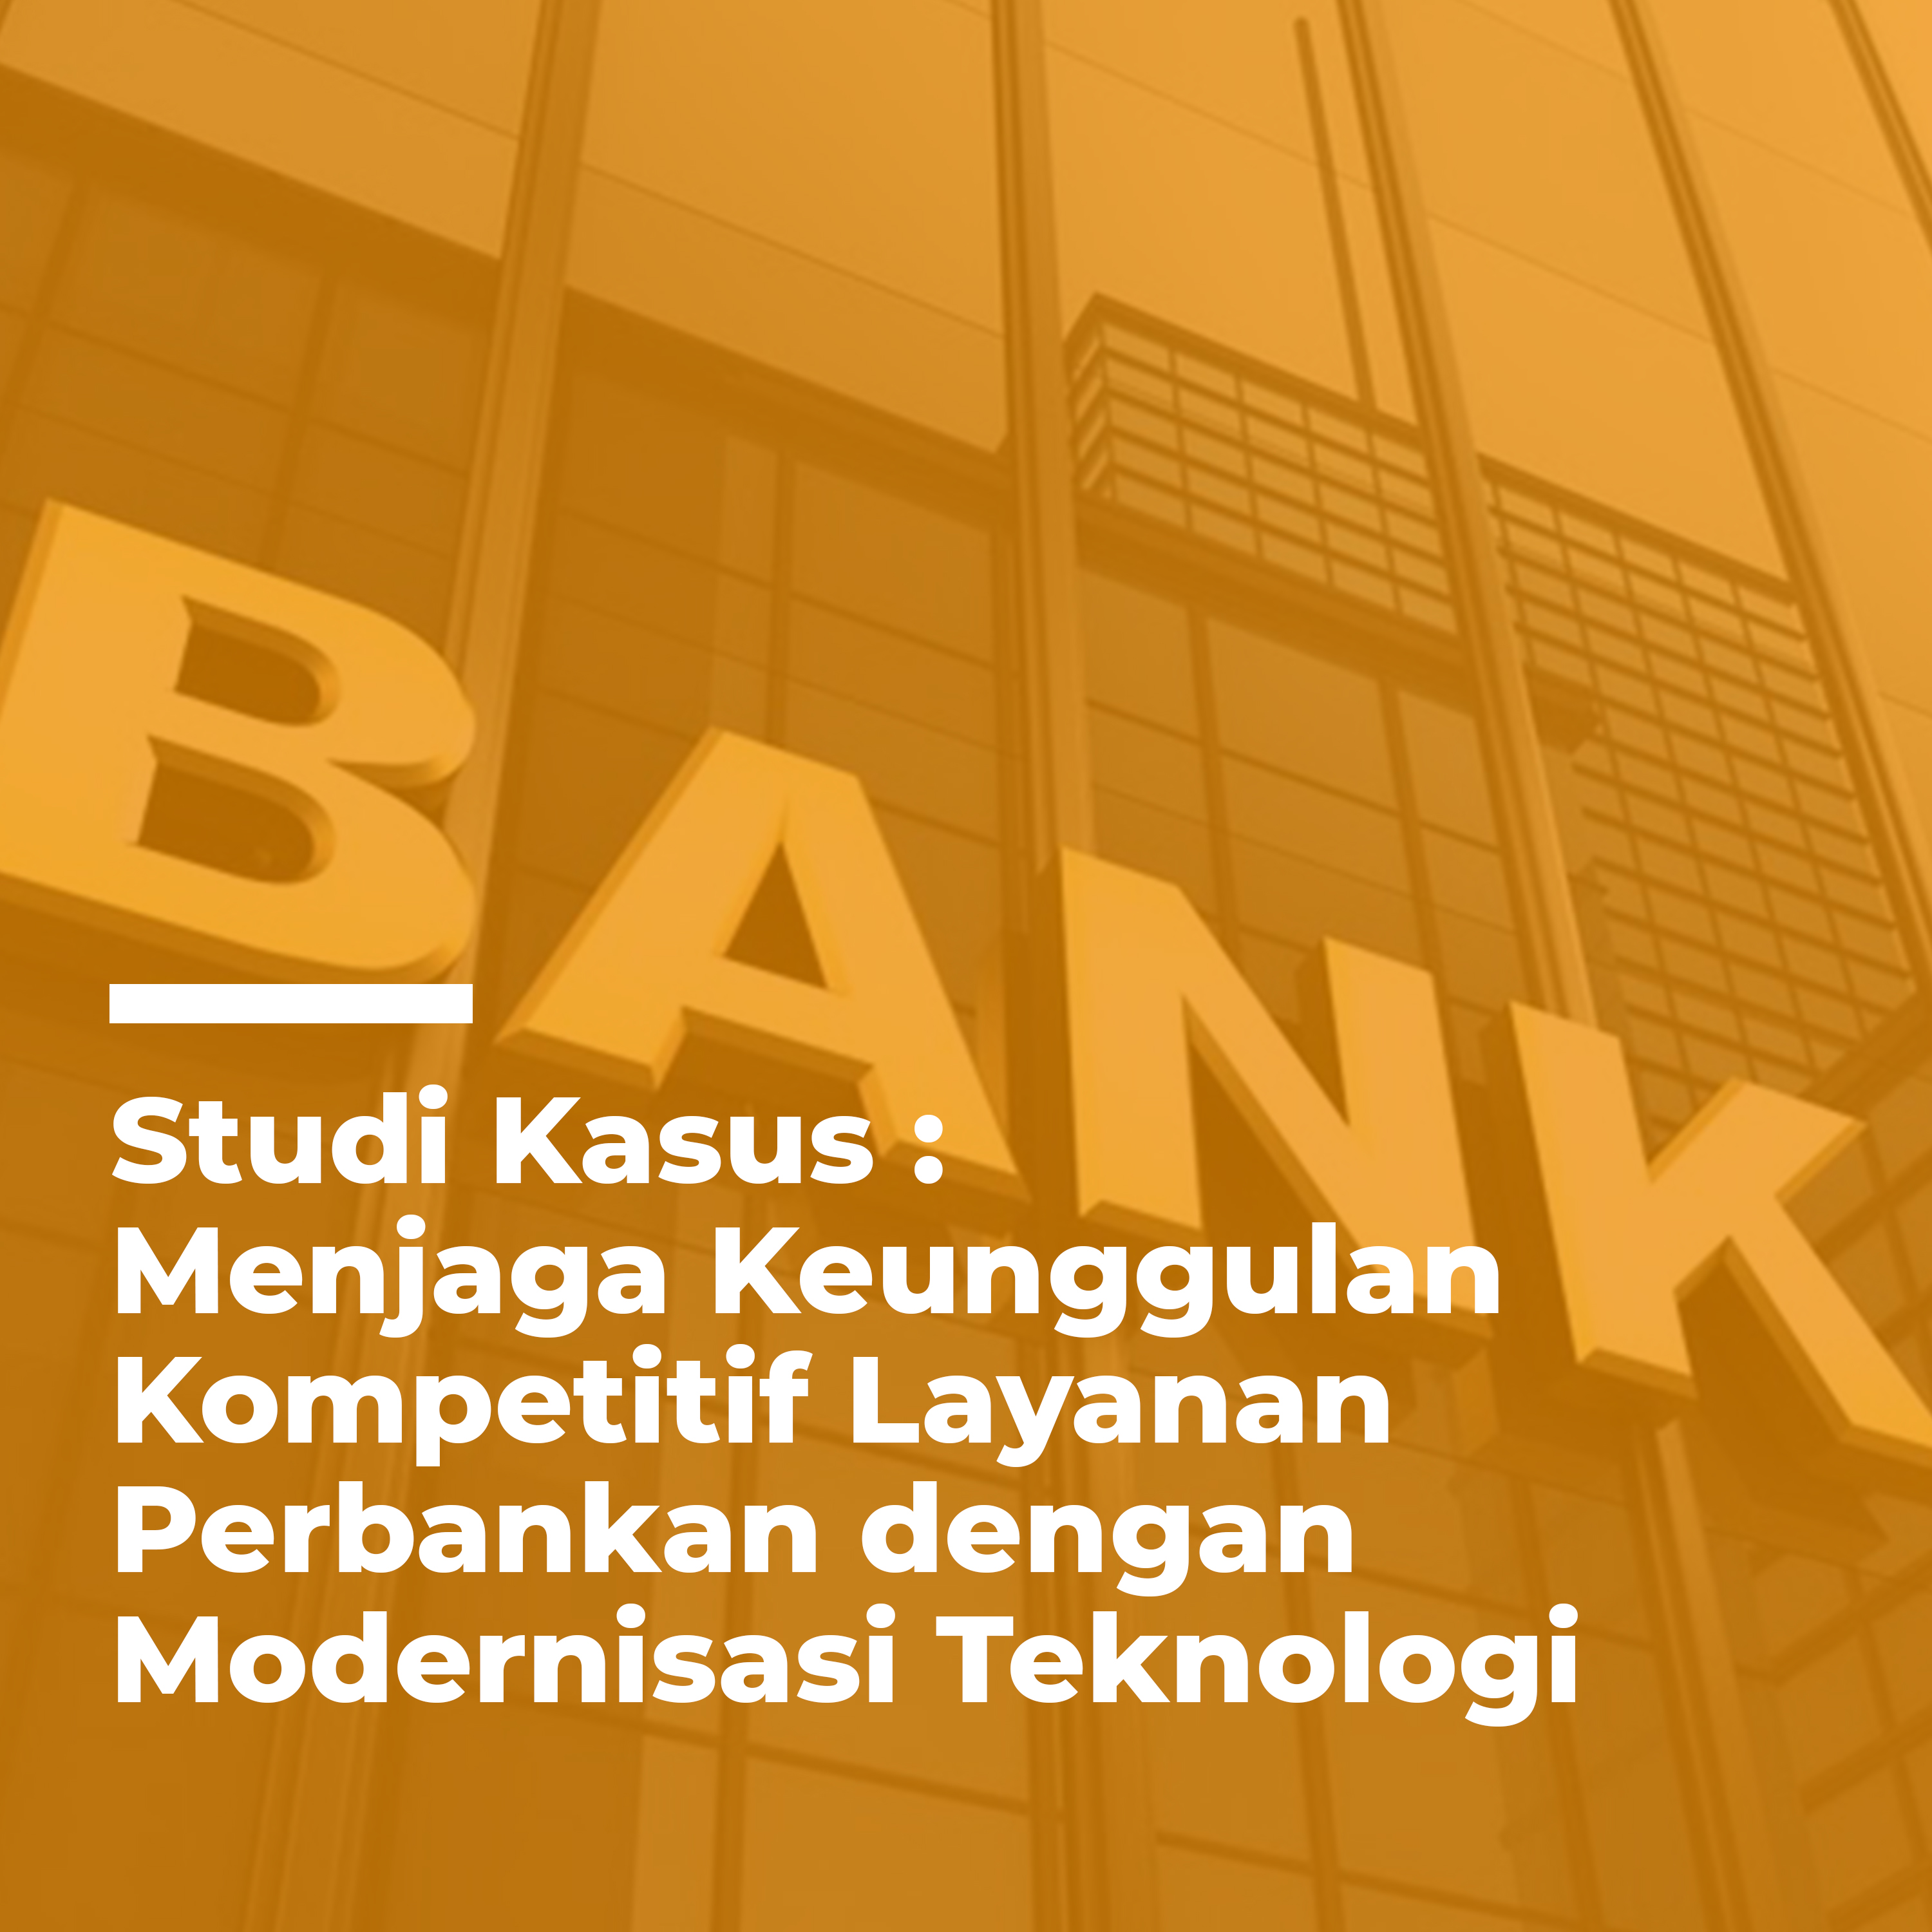 Menjadi bank unggul di Indonesia dengan mengurangi biaya infrastruktur IT hingga 99%.